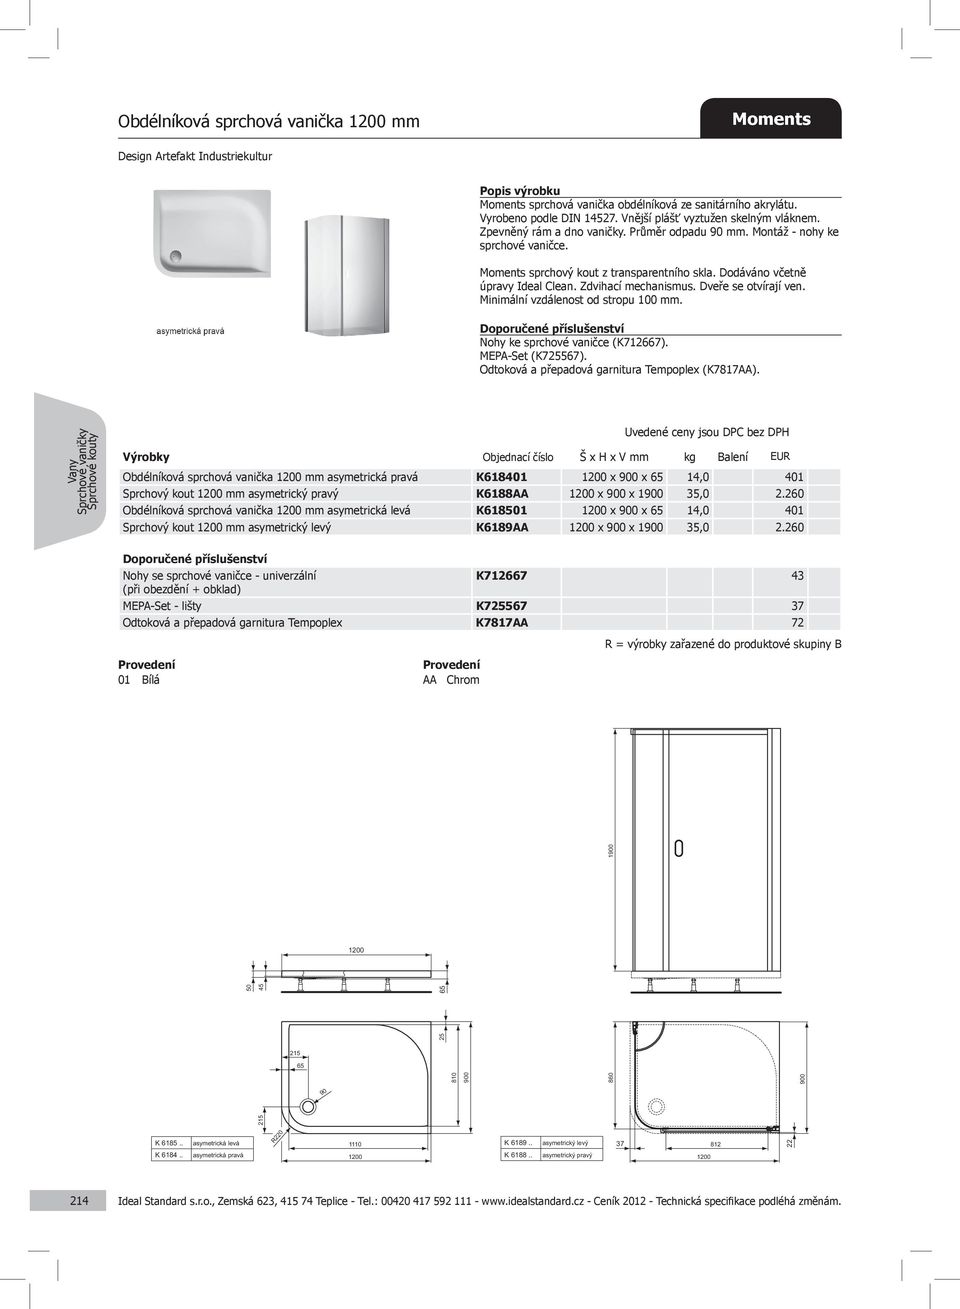 Dodáváno včetně úpravy Ideal Clean. Zdvihací mechanismus. Dveře se otvírají ven. Minimální vzdálenost od stropu 100 mm. Nohy ke sprchové vaničce (K712667). MEPA-Set (K725567).